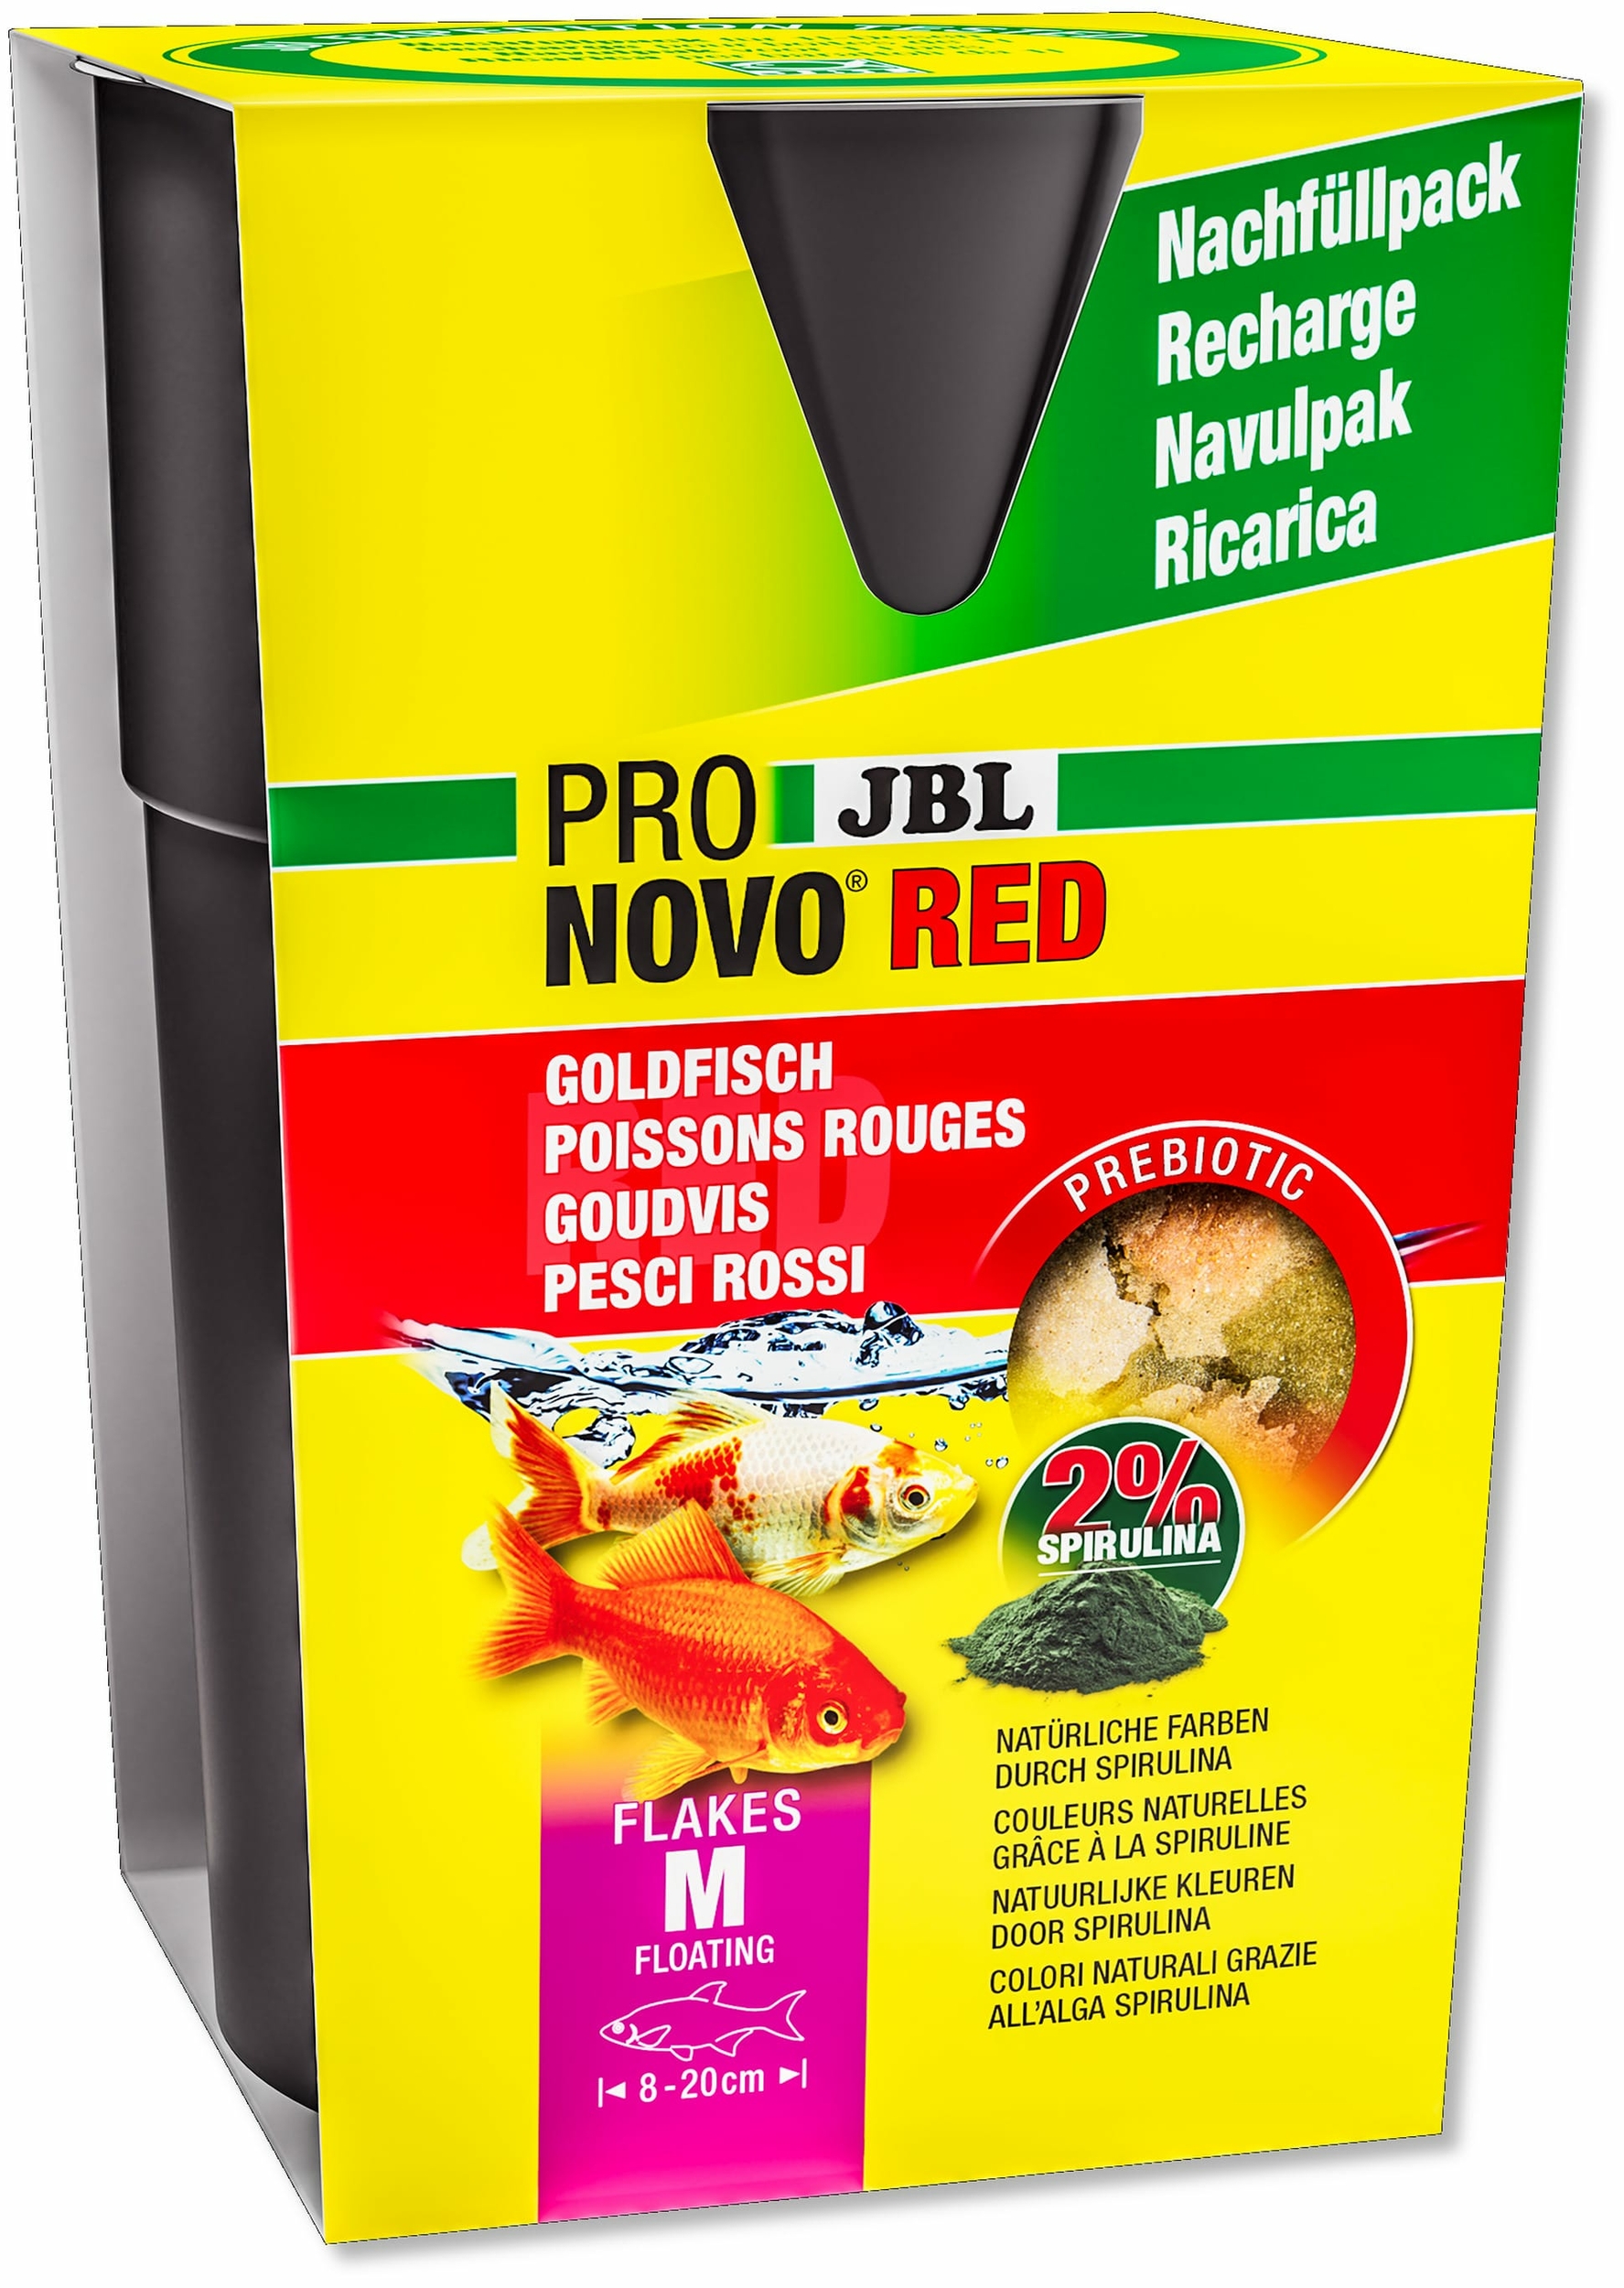 jbl-pronovo-red-flakes-m-750-ml-recharge-nourriture-de-base-en-flocons-pour-poissons-rouges-de-8-a-20-cm-min